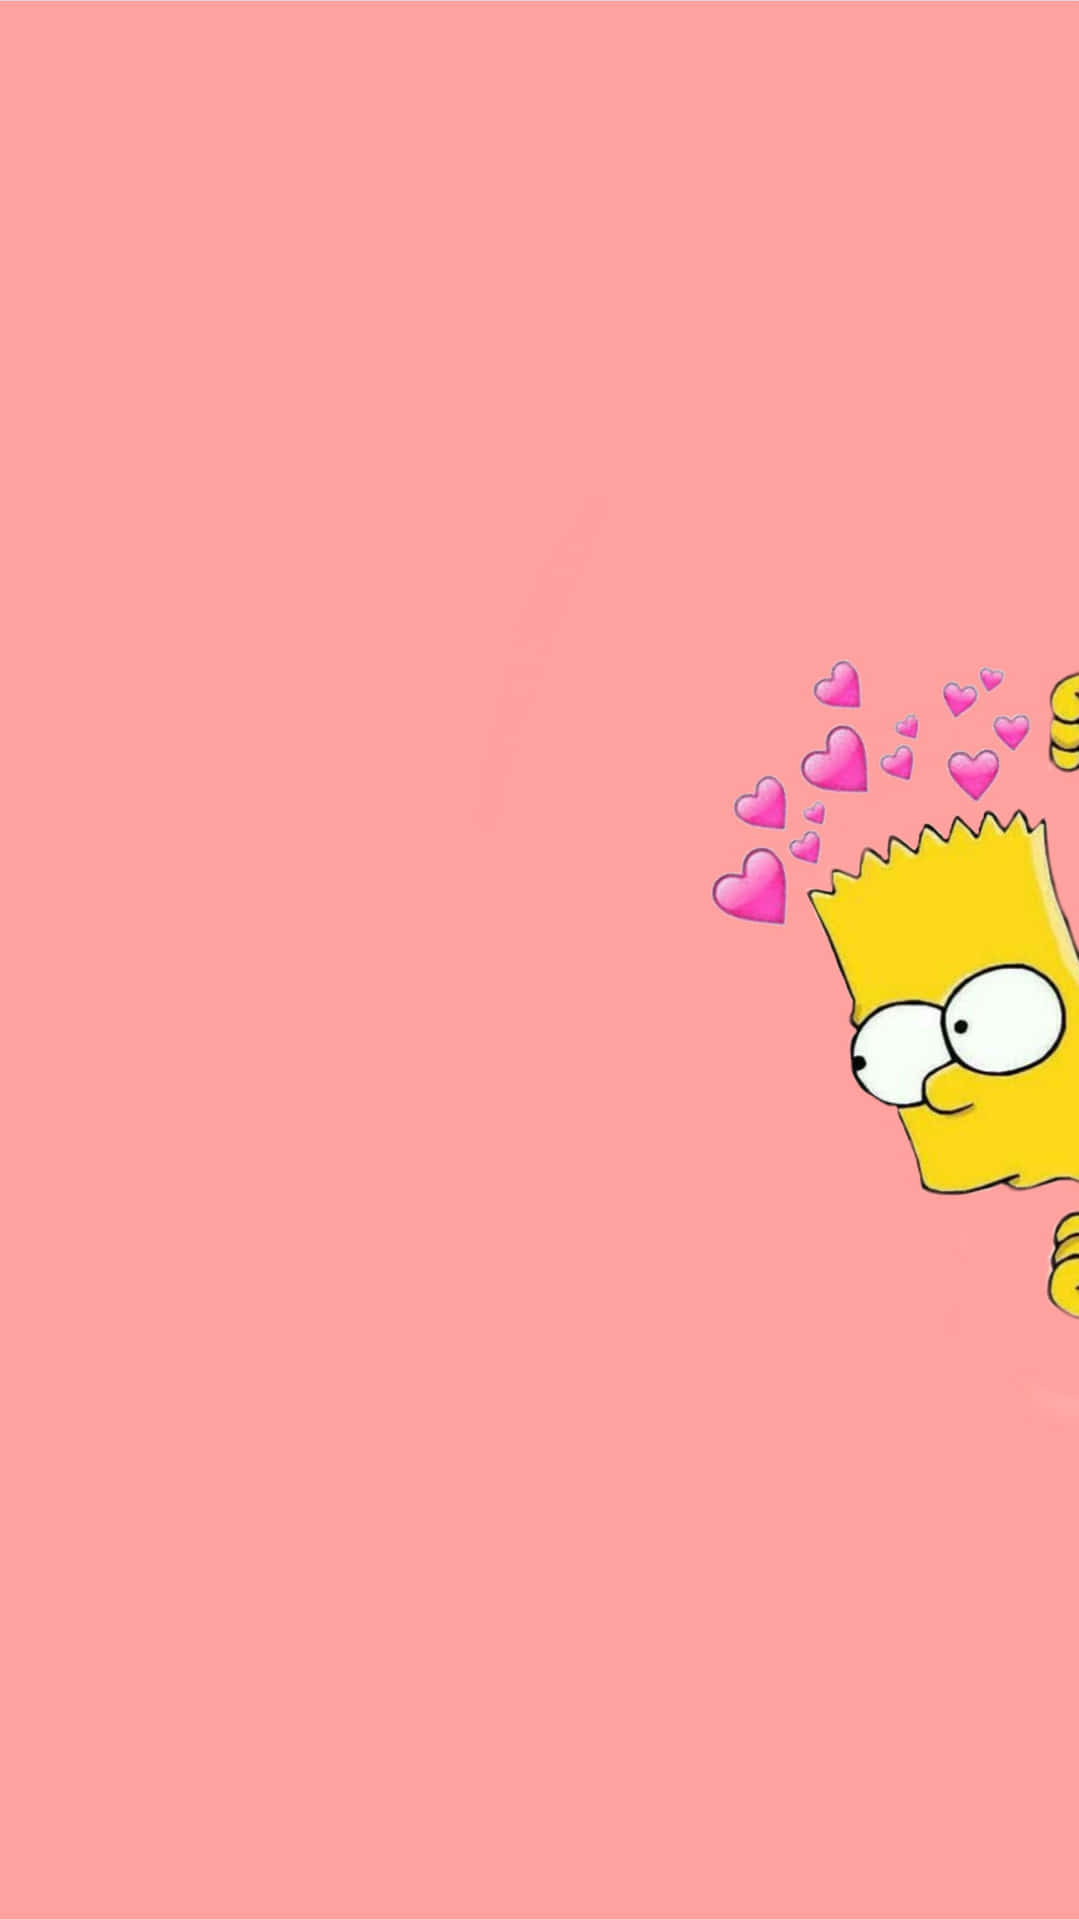 Bringensie Mit Dem Ikonischen Saturday Night Live Charakter Bart Simpson Etwas Spaß In Ihr Zuhause. Wallpaper